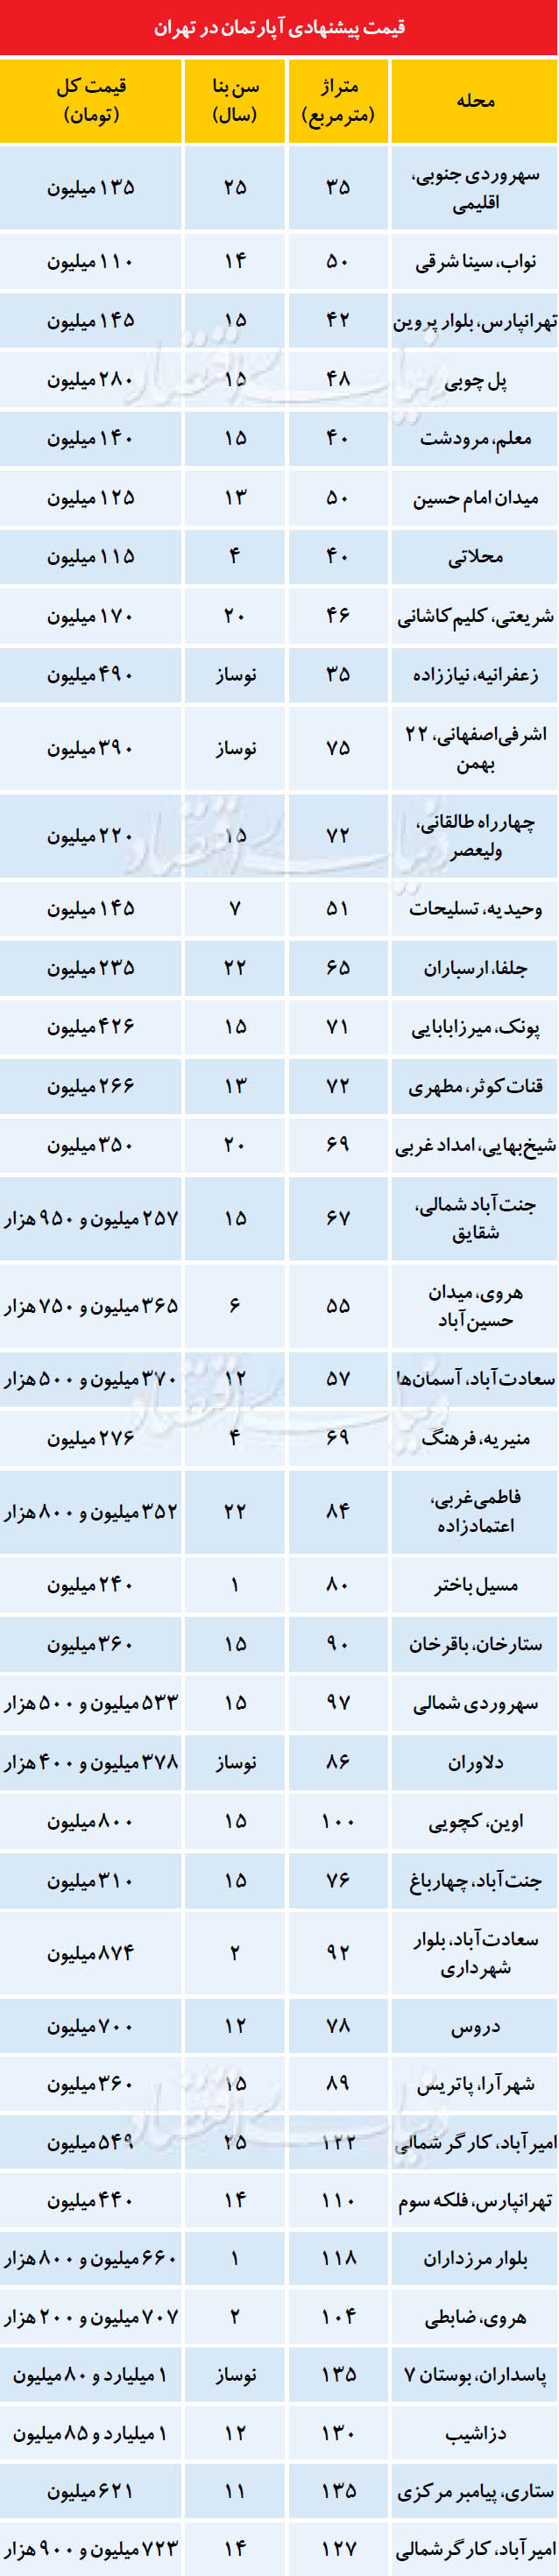 قیمت پیشنهادی آپارتمان در تهران